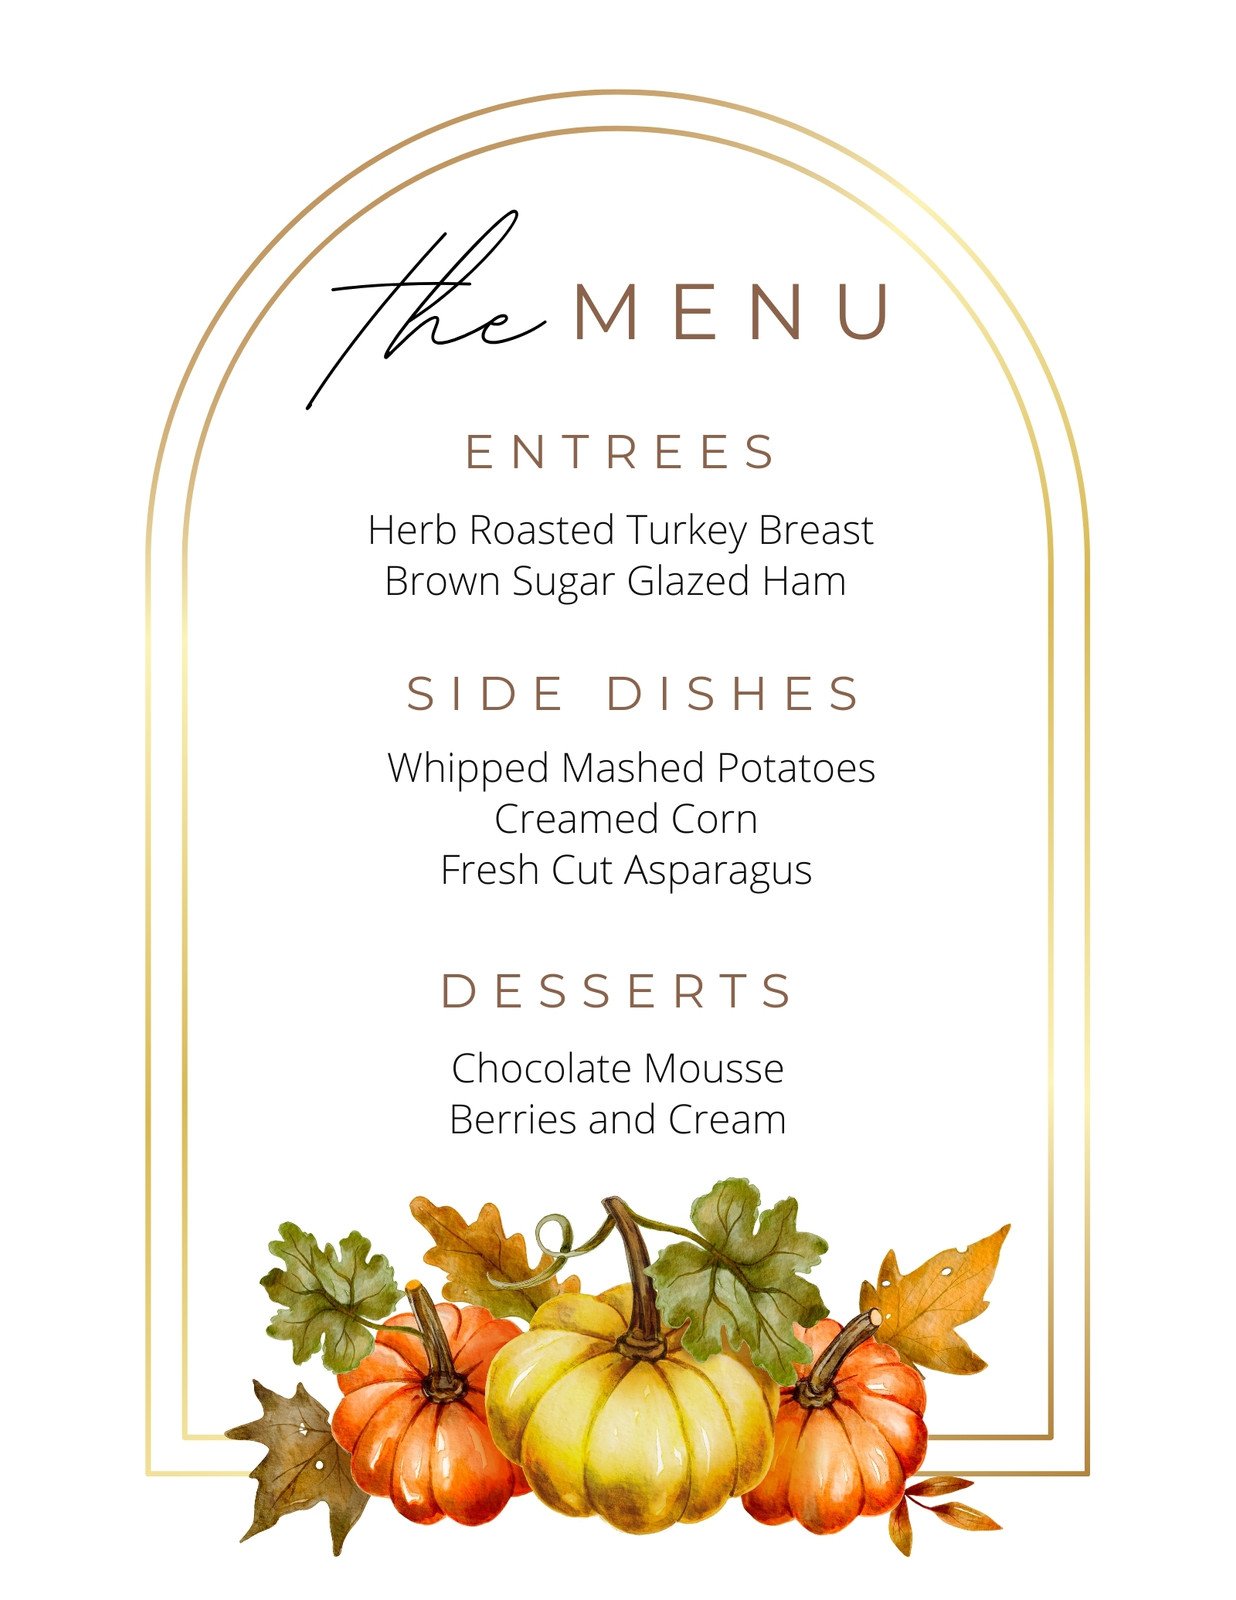 thanksgiving dinner menu template